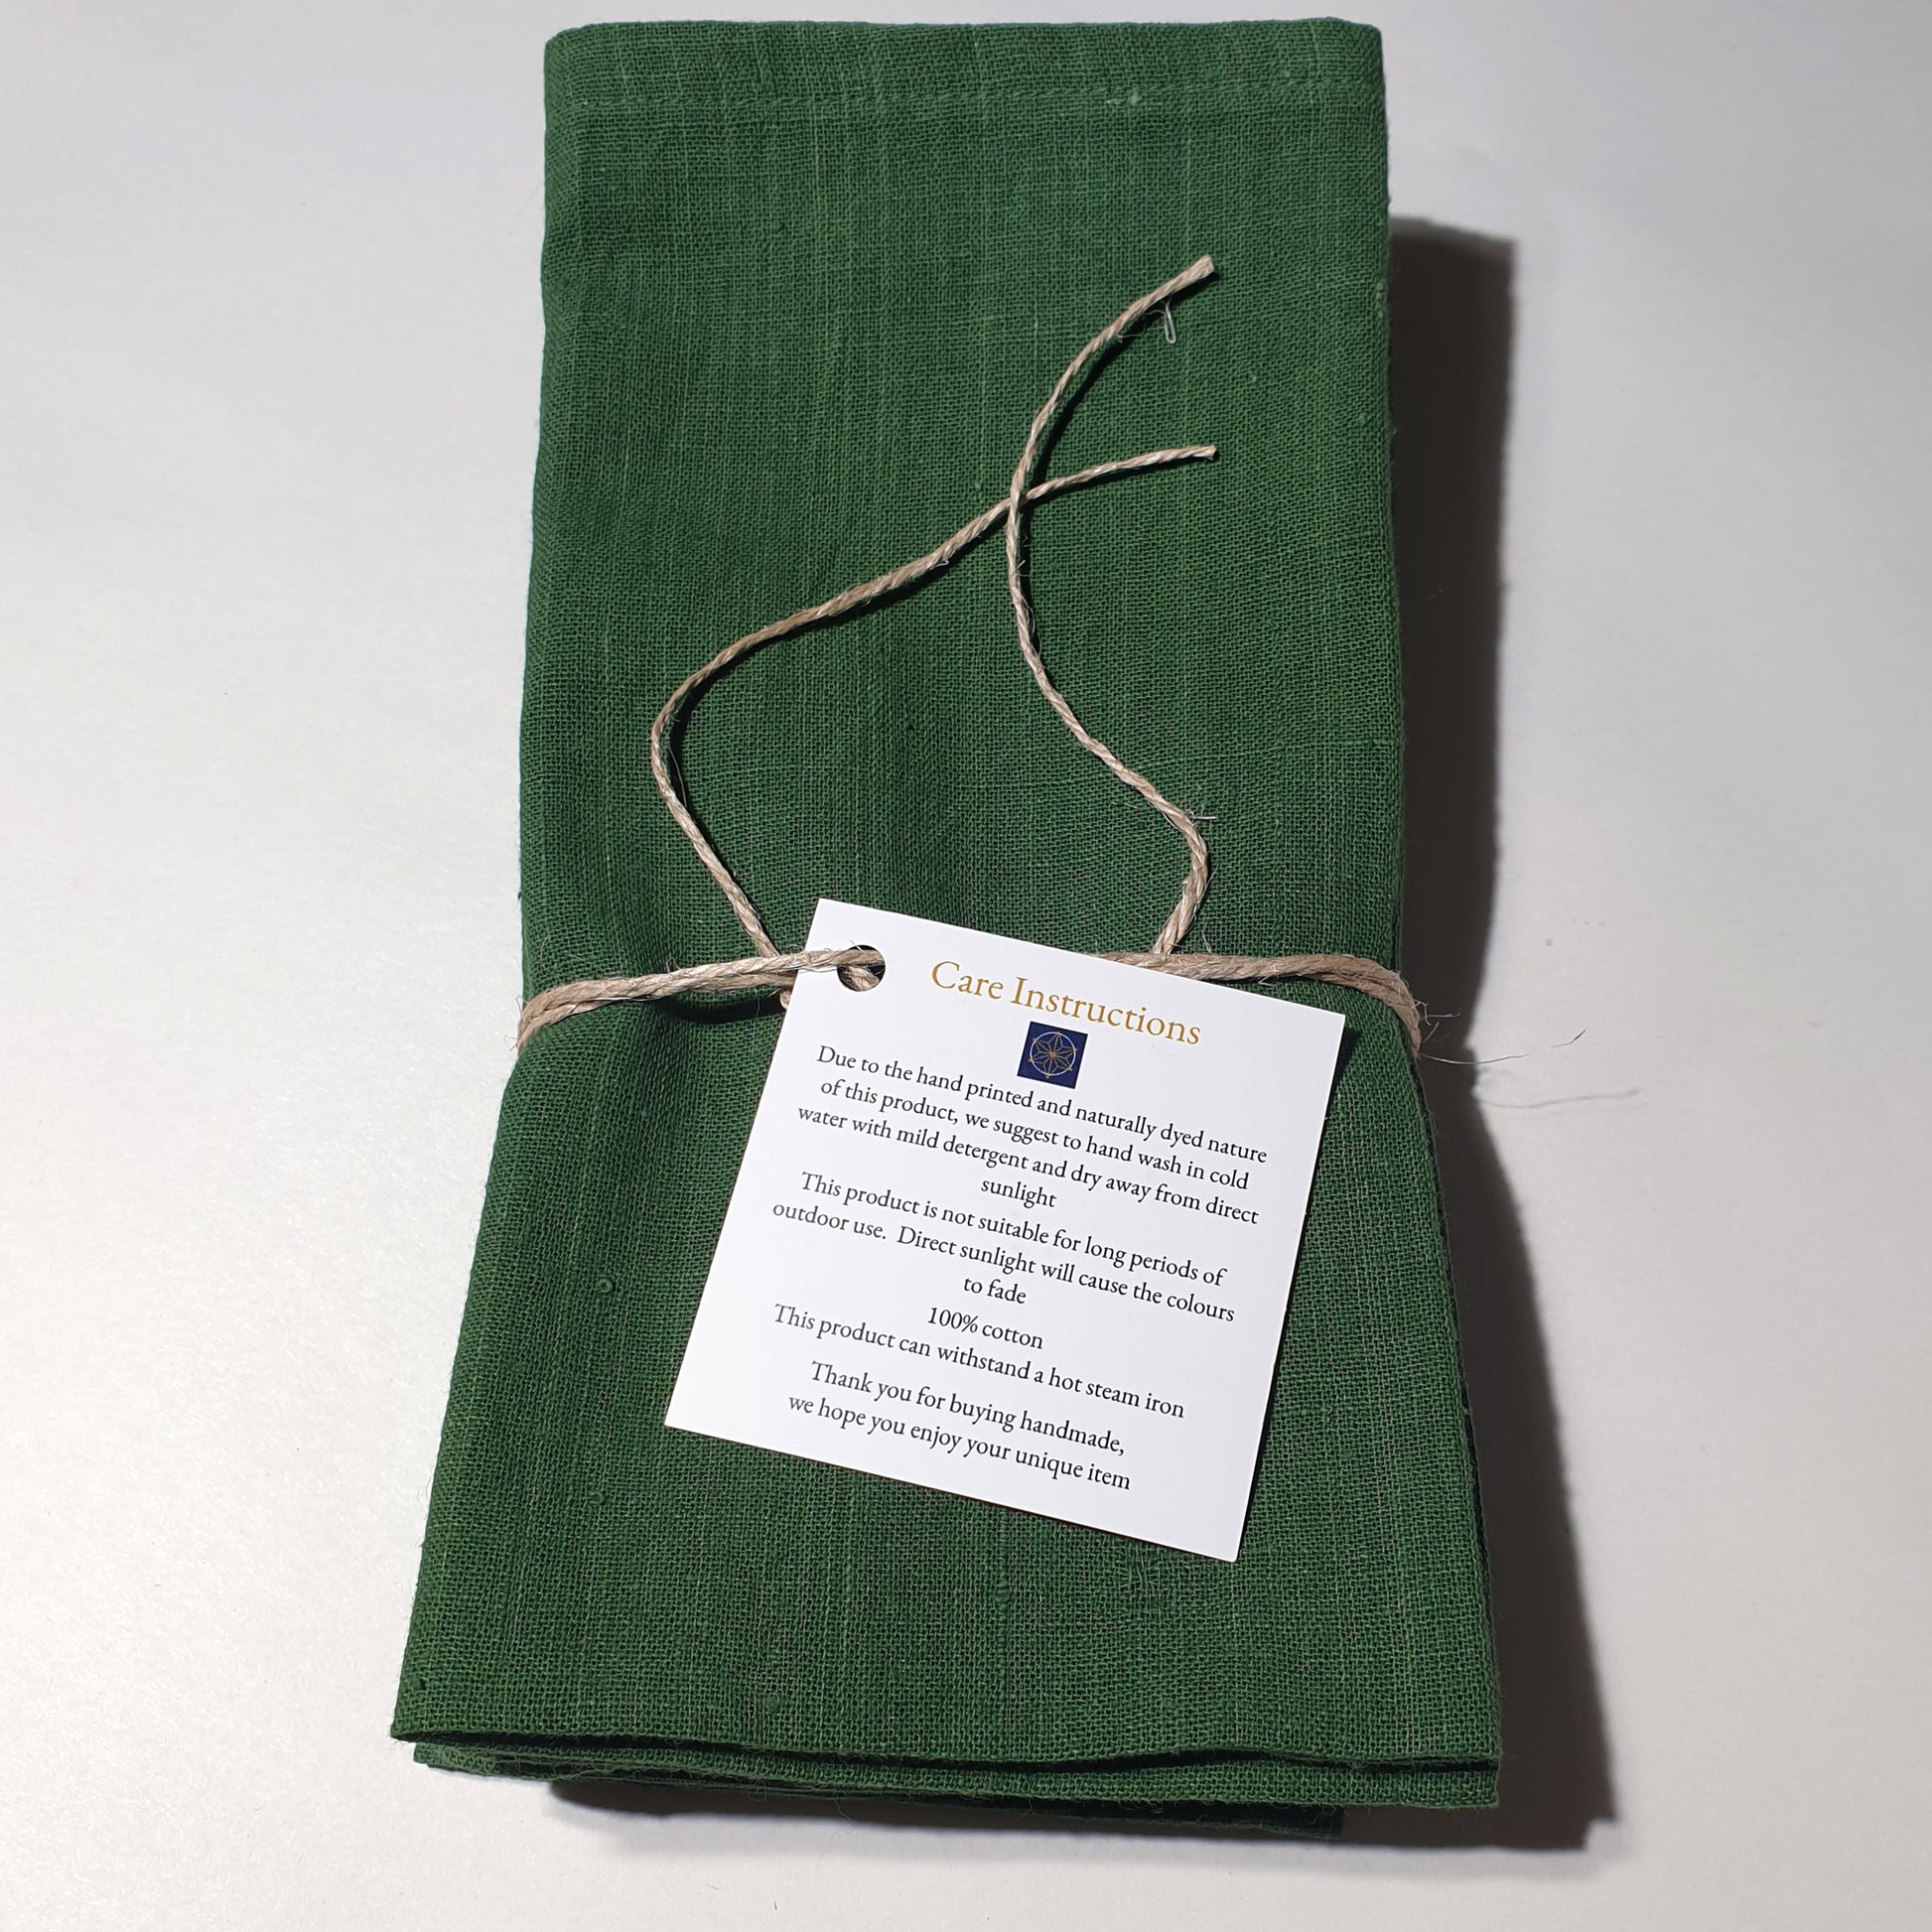 Luxurious cotton serviettes in dark green